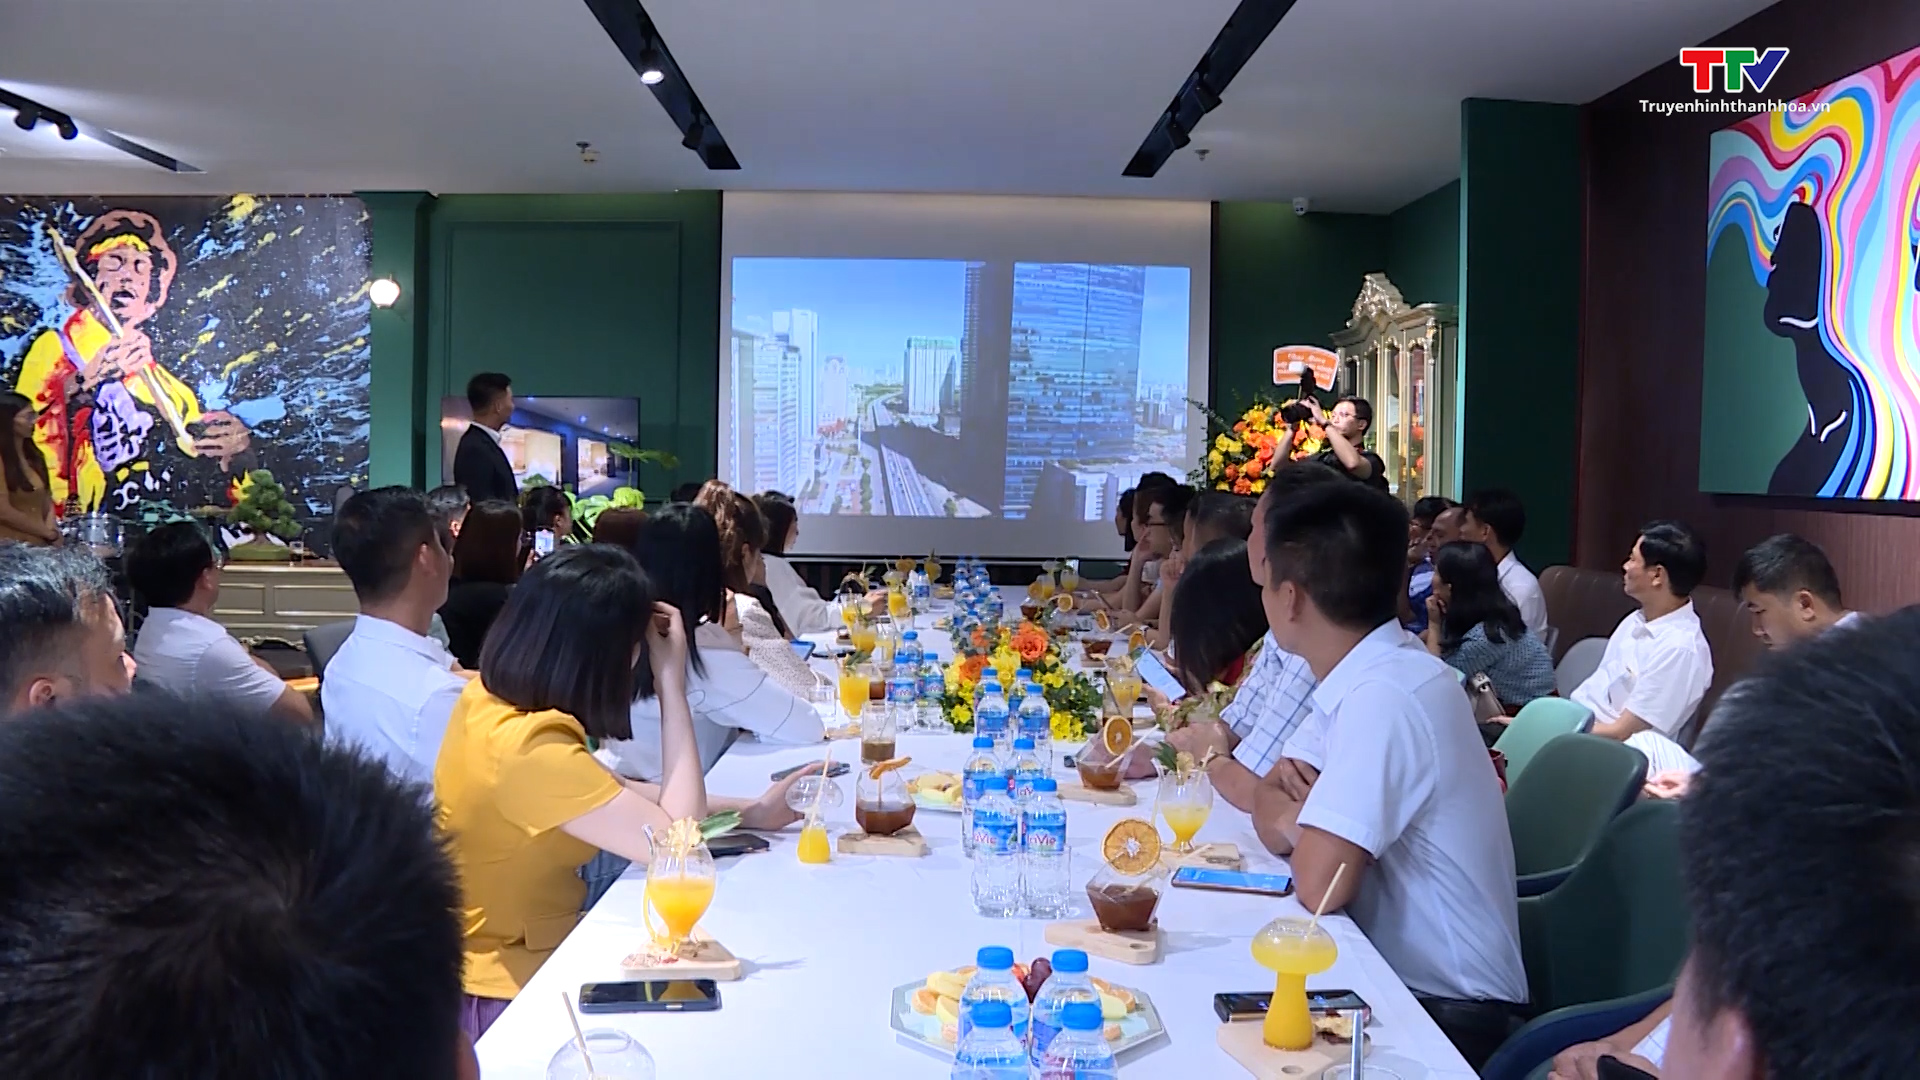 Hiệp hội doanh nghiệp Thành phố Thanh Hoá thăm, làm việc với các doanh nghiệp hội viên tại Hà Nội - Ảnh 3.